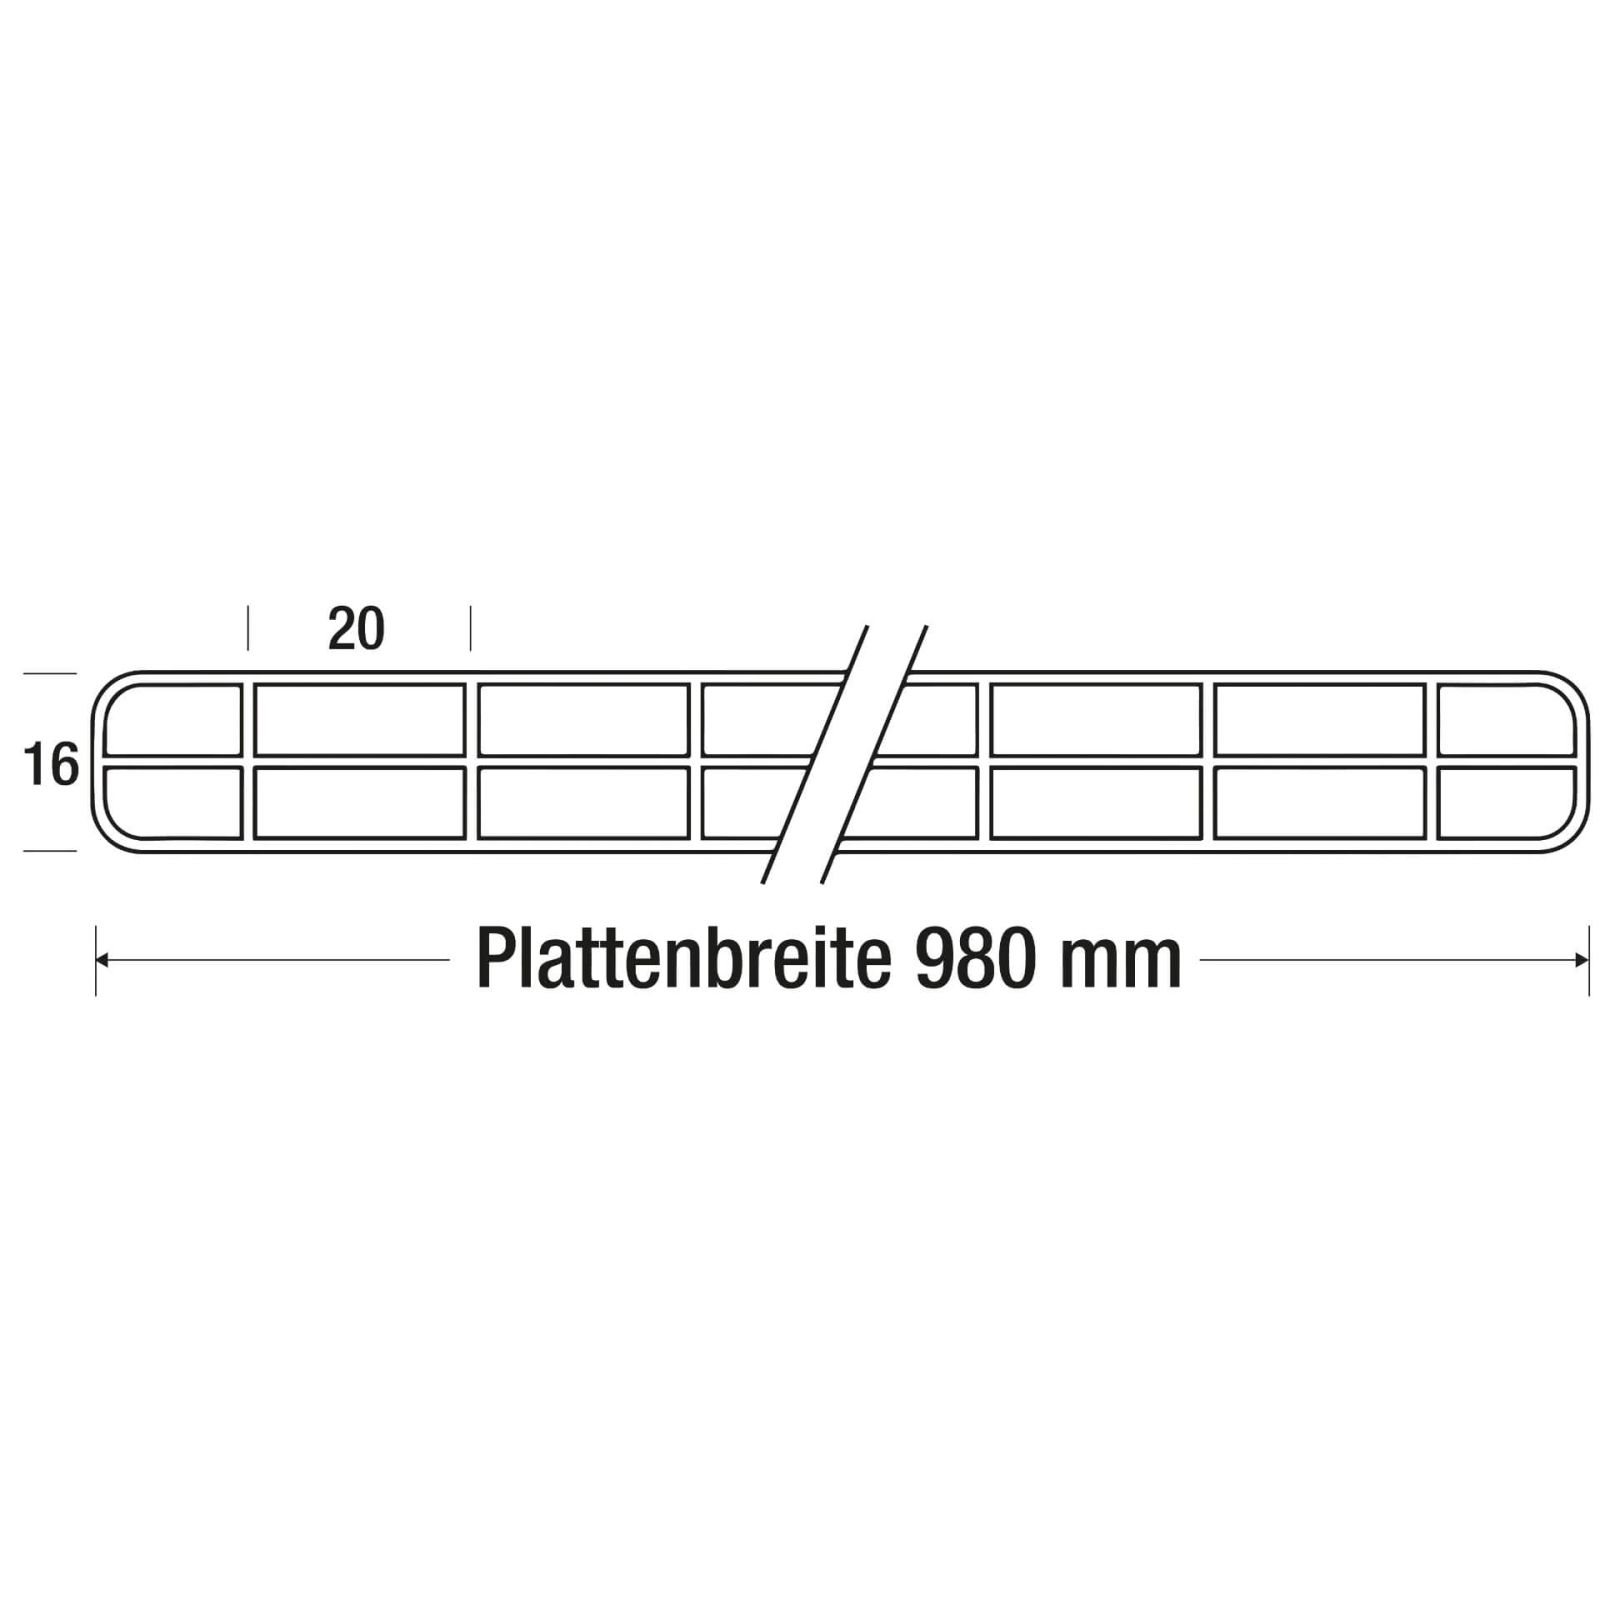 Polycarbonat Stegplatte | 16 mm | Profil DUO | Sparpaket | Plattenbreite 980 mm | Klar | 2nd LIFE LINE | Breite 3,09 m | Länge 2,00 m #10